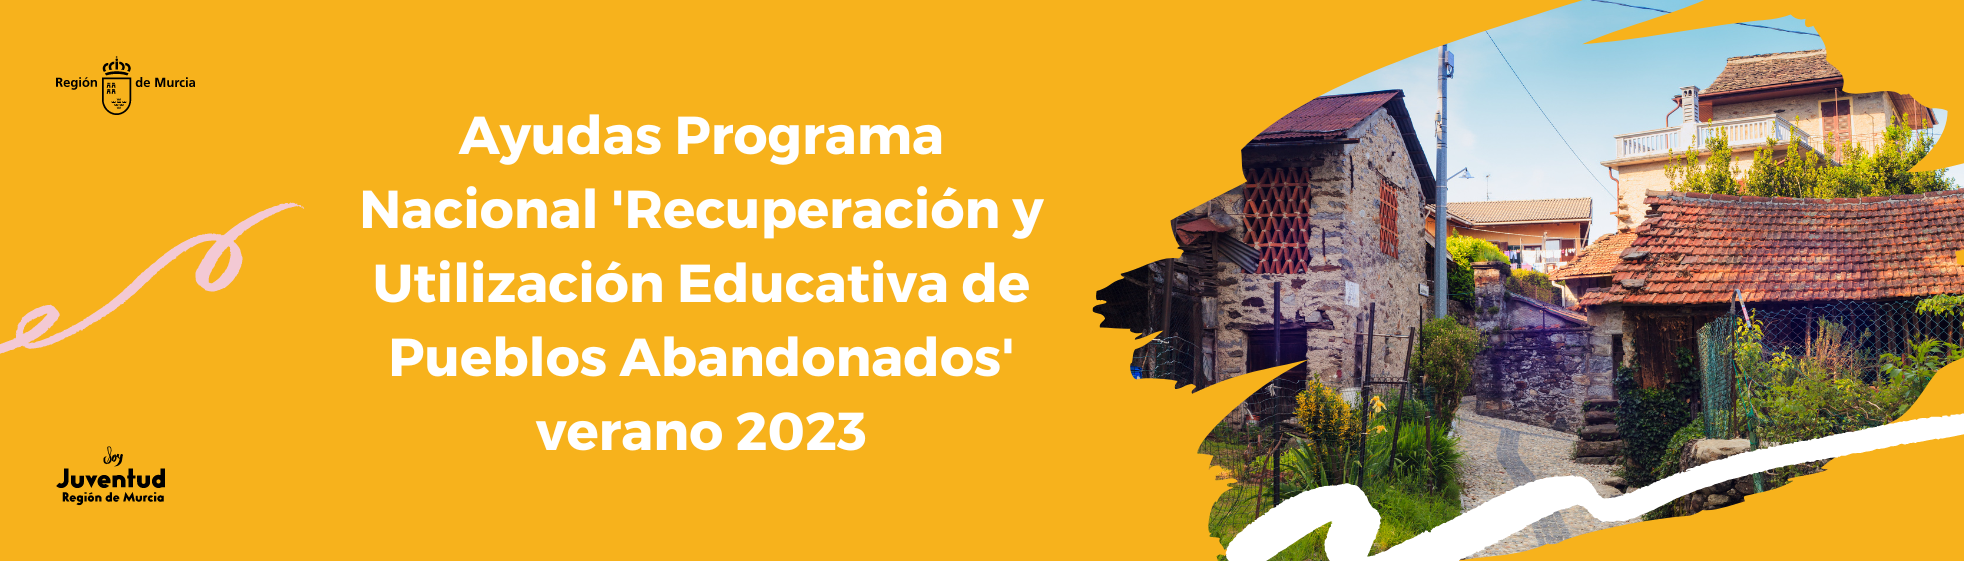 Ayudas Programa Nacional 'Recuperación y Utilización Educativa de Pueblos Abandonados' verano 2023